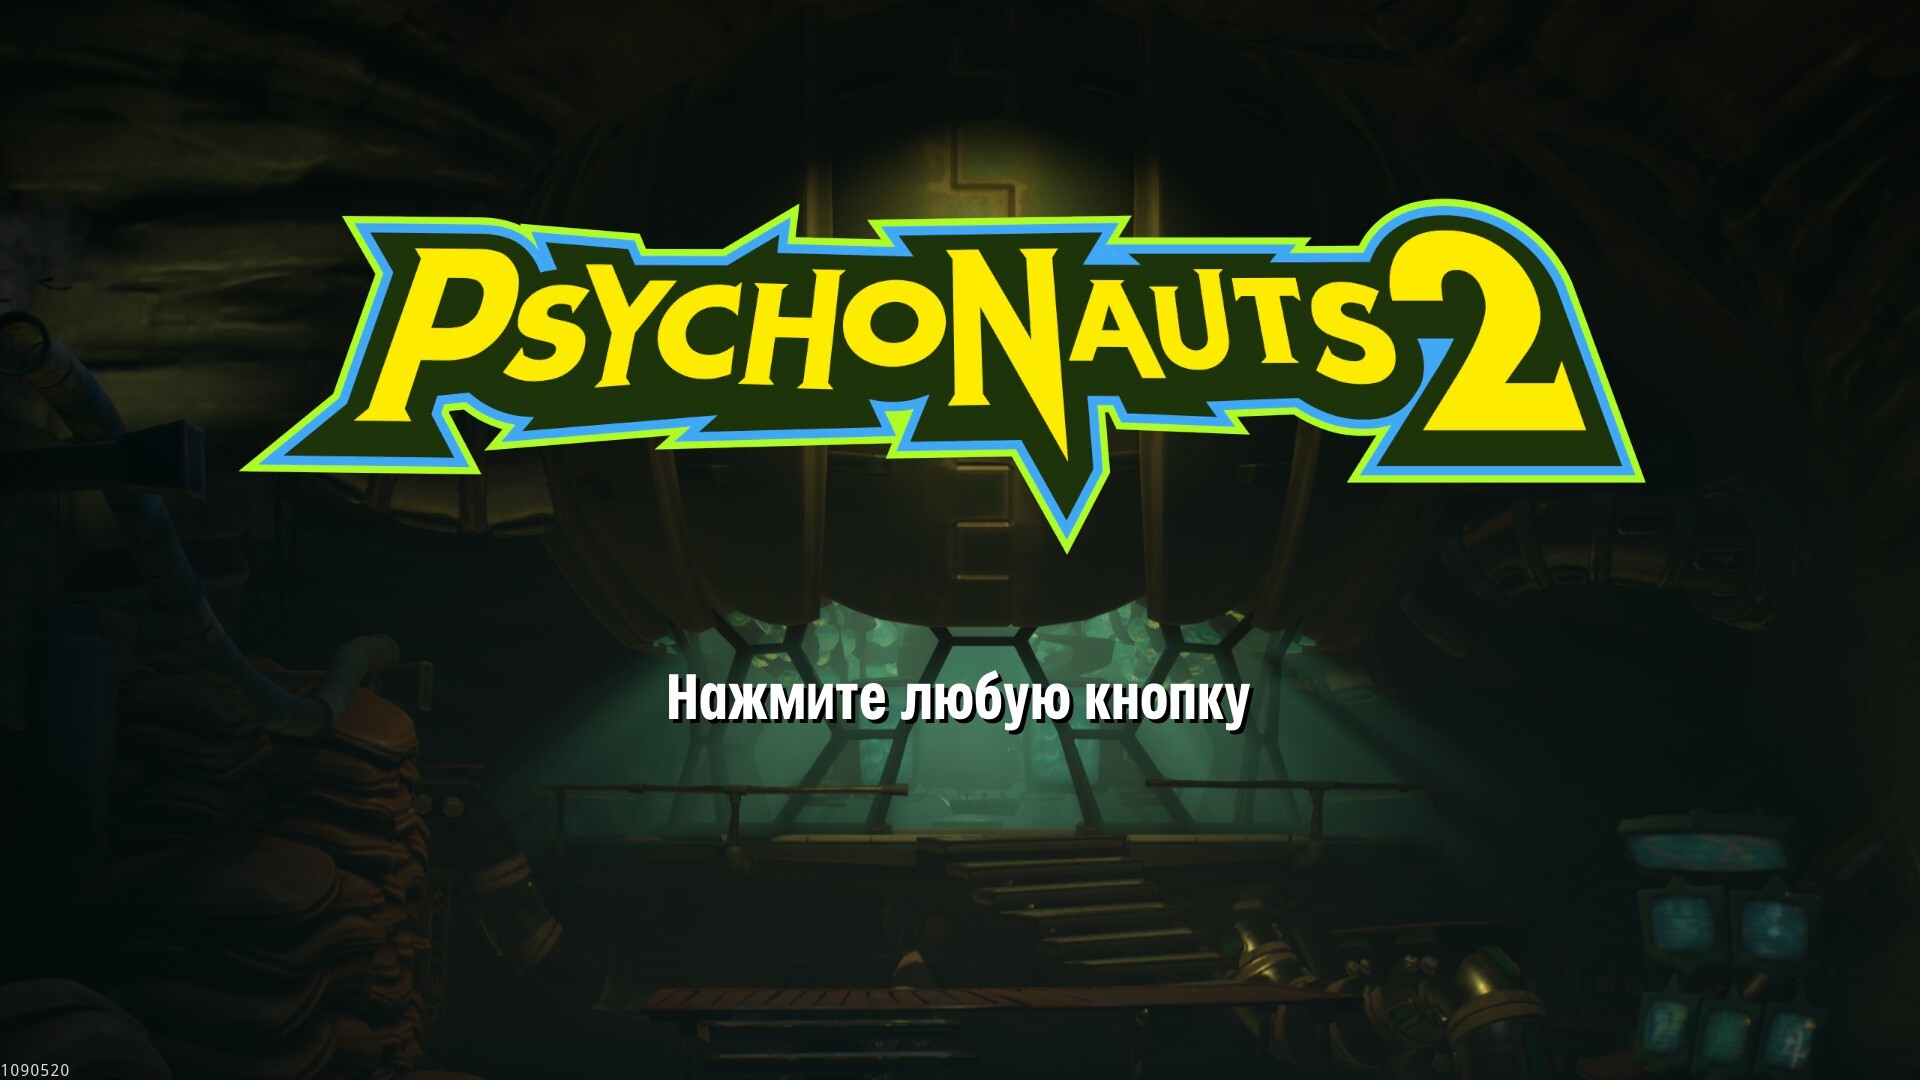 Игра Psychonauts 2 на Xbox получила русскую локализацию